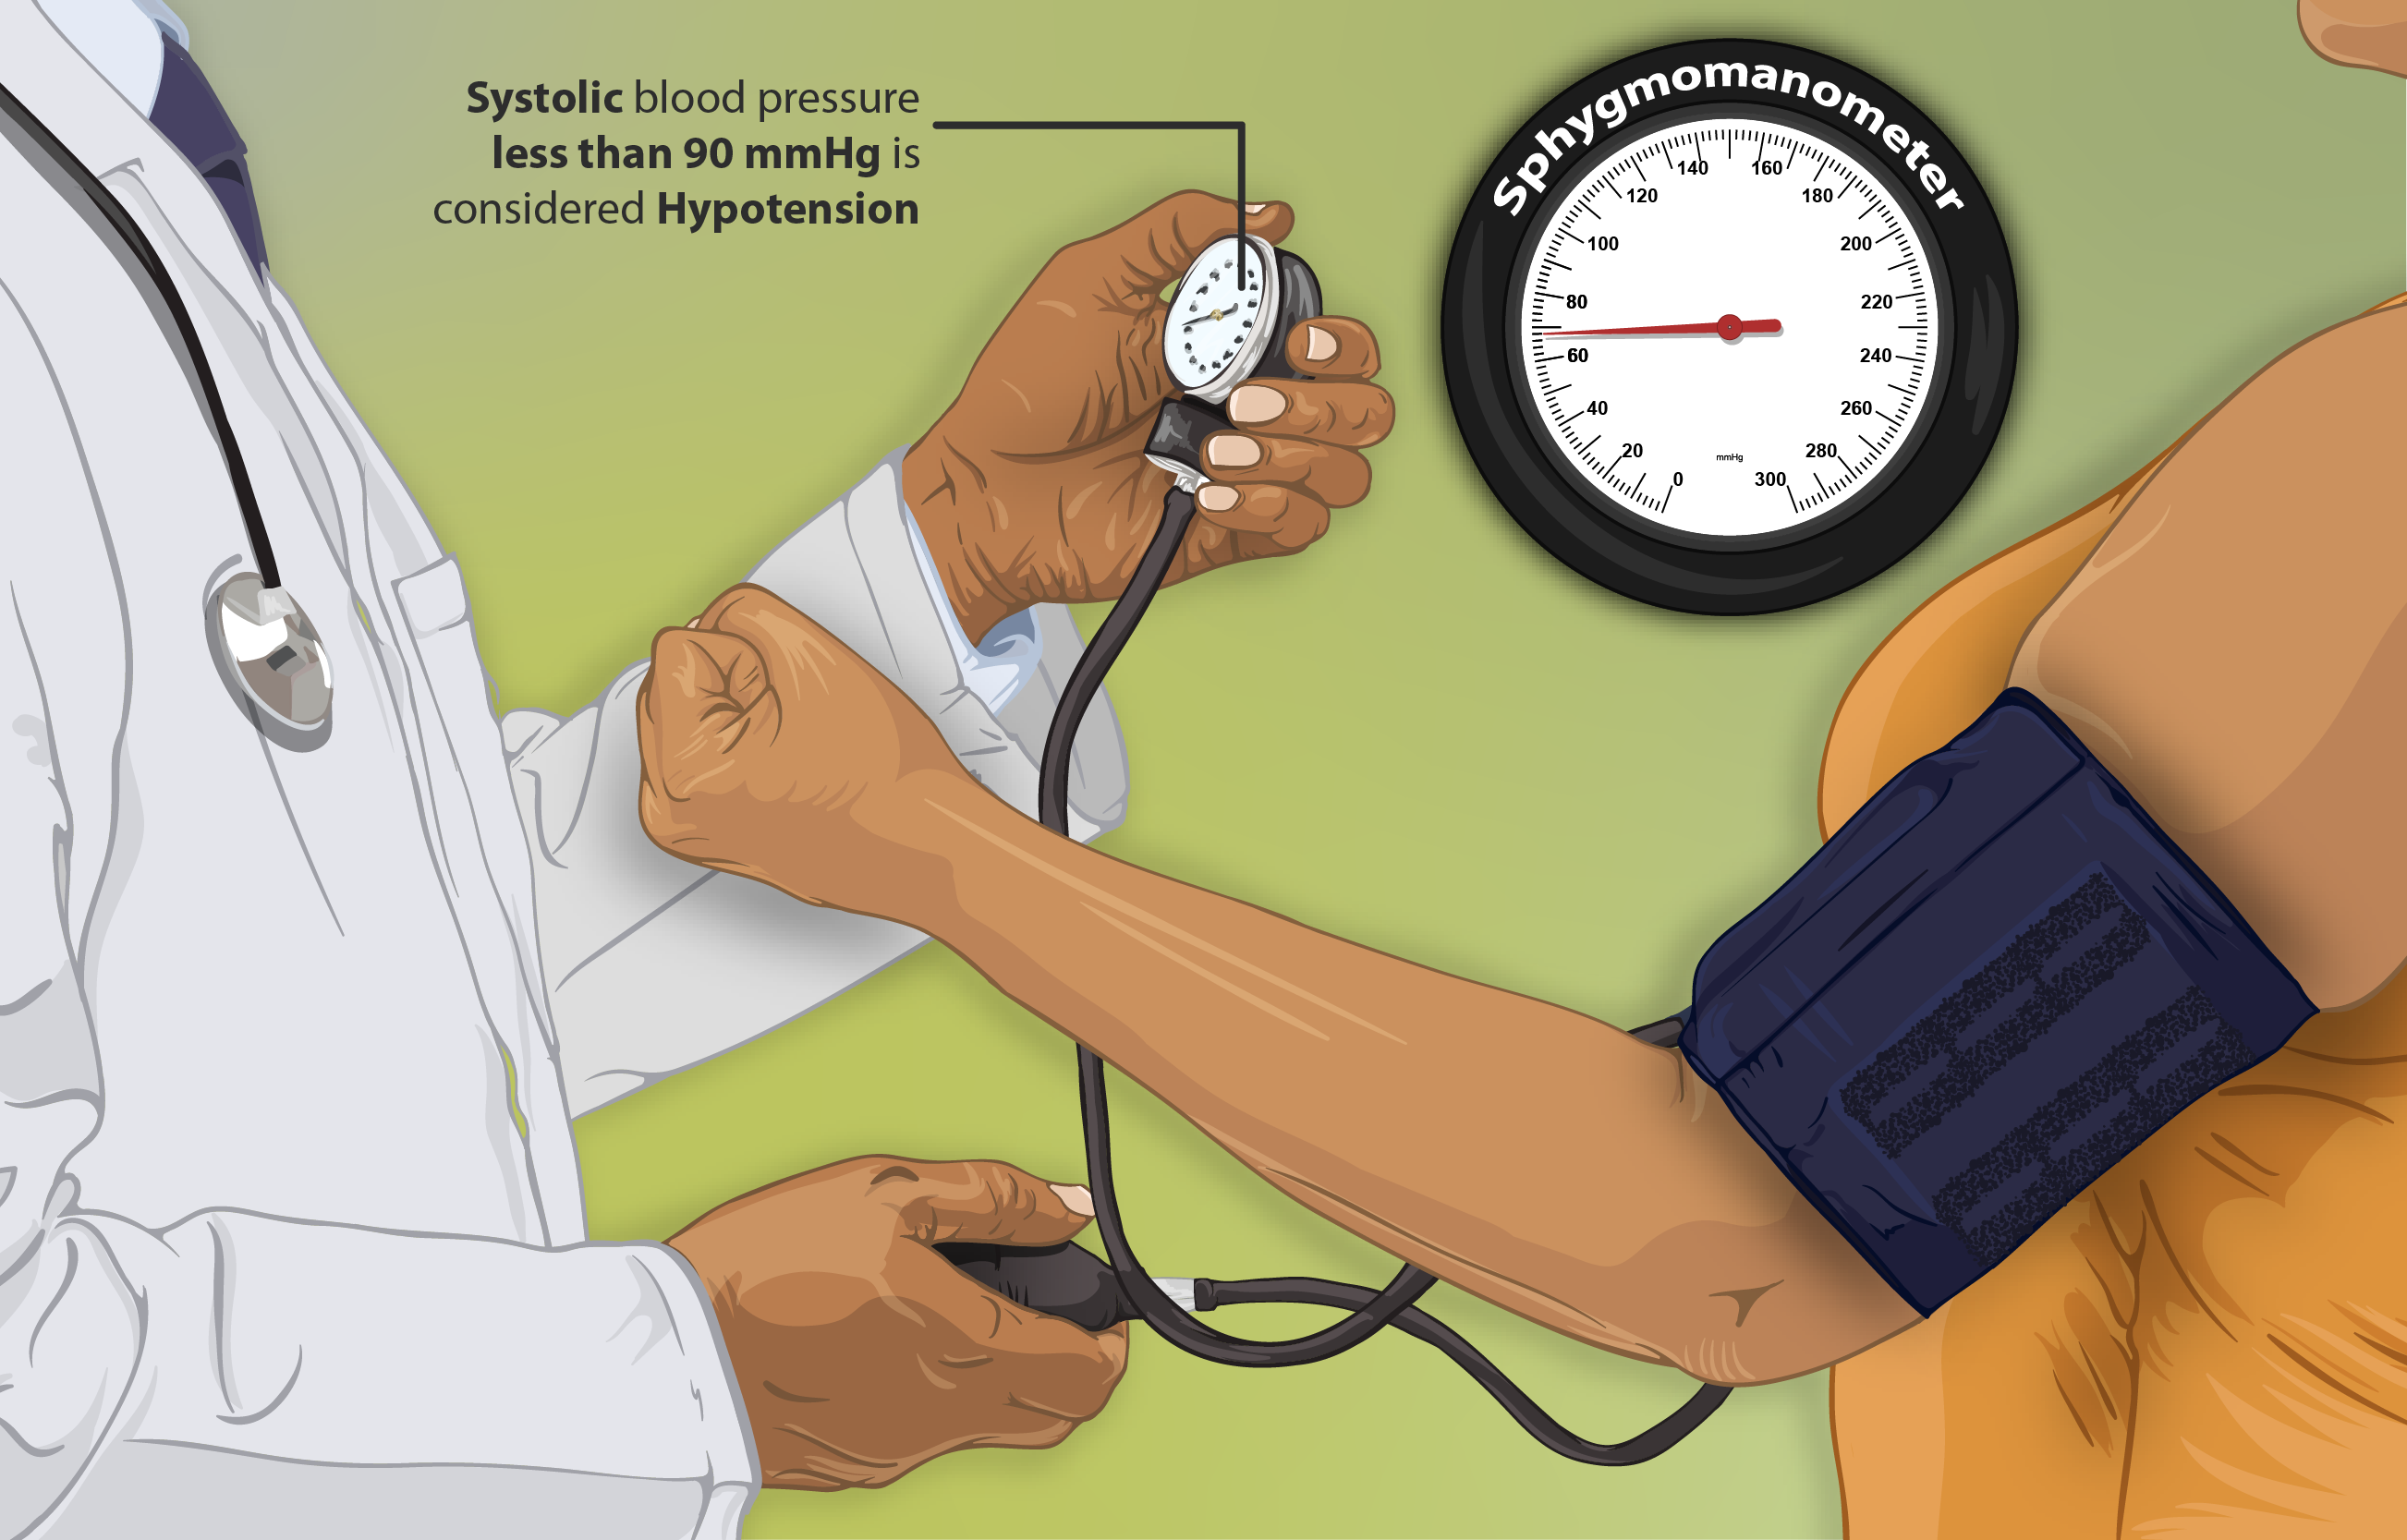 تصوير لمريضة تعاني من انخفاض ضغط الدم أثناء فحص ضغط دمها